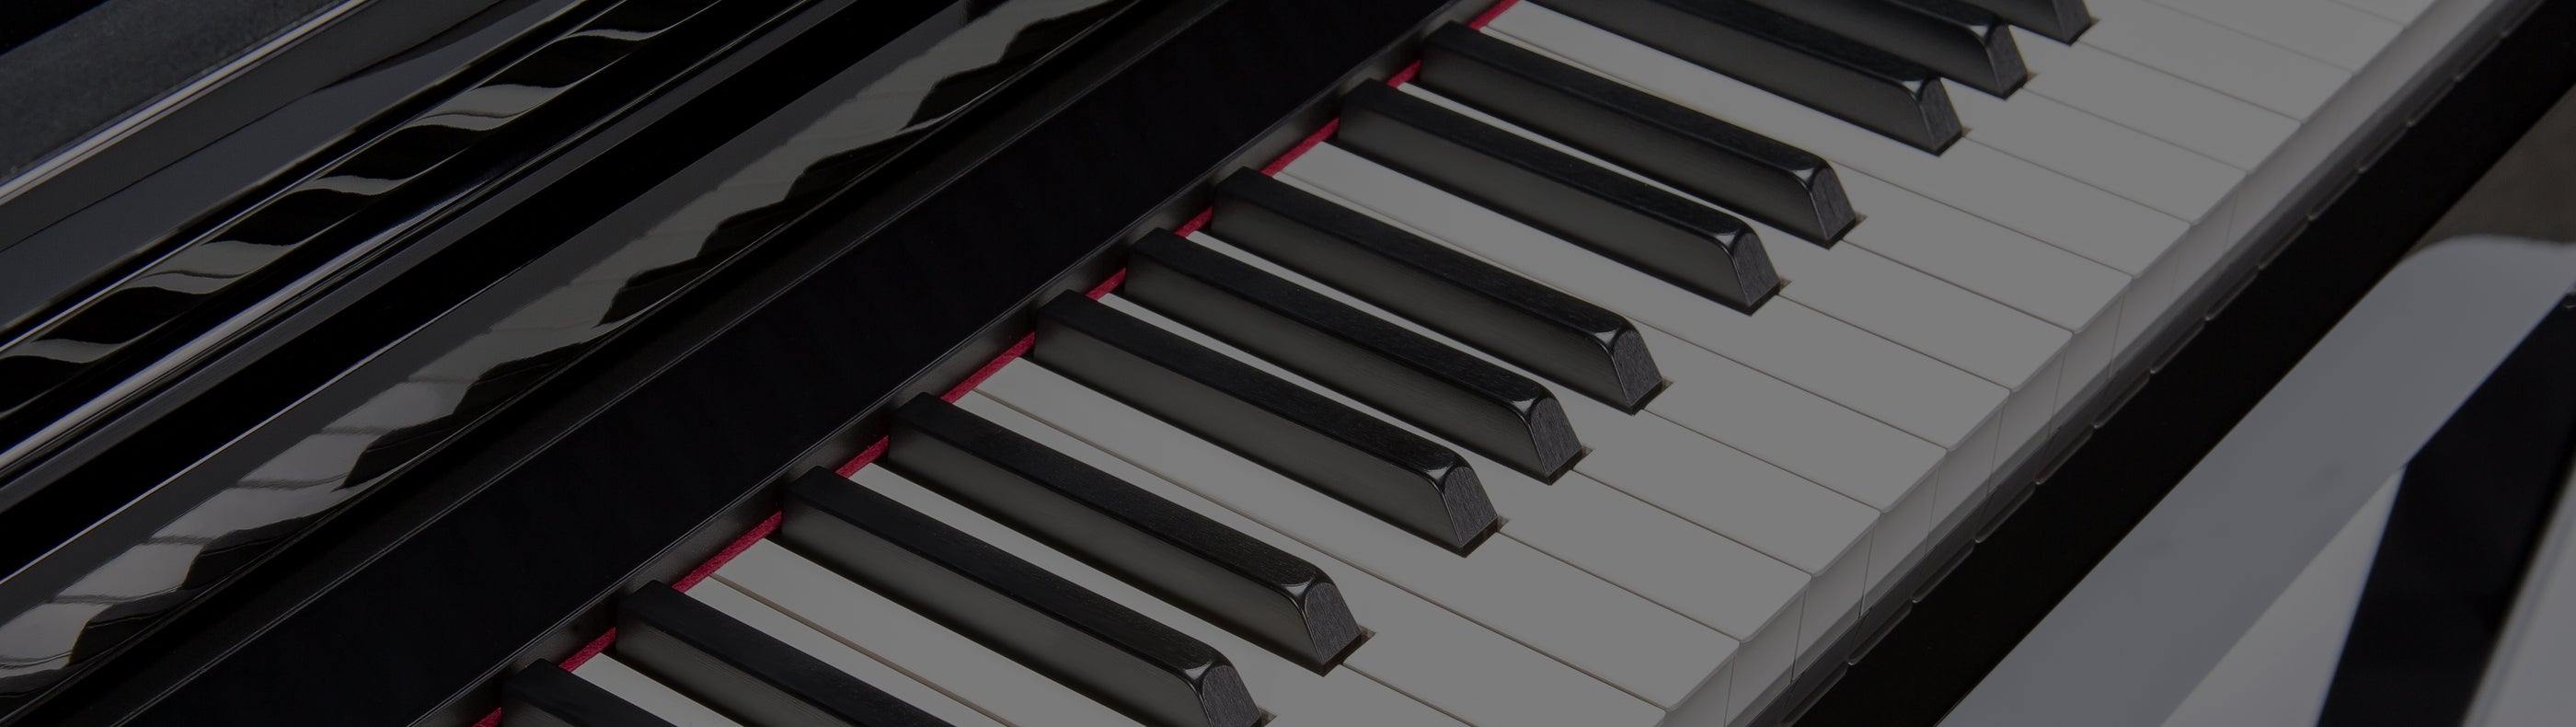 Yamaha Digital Pianos and Keyboards